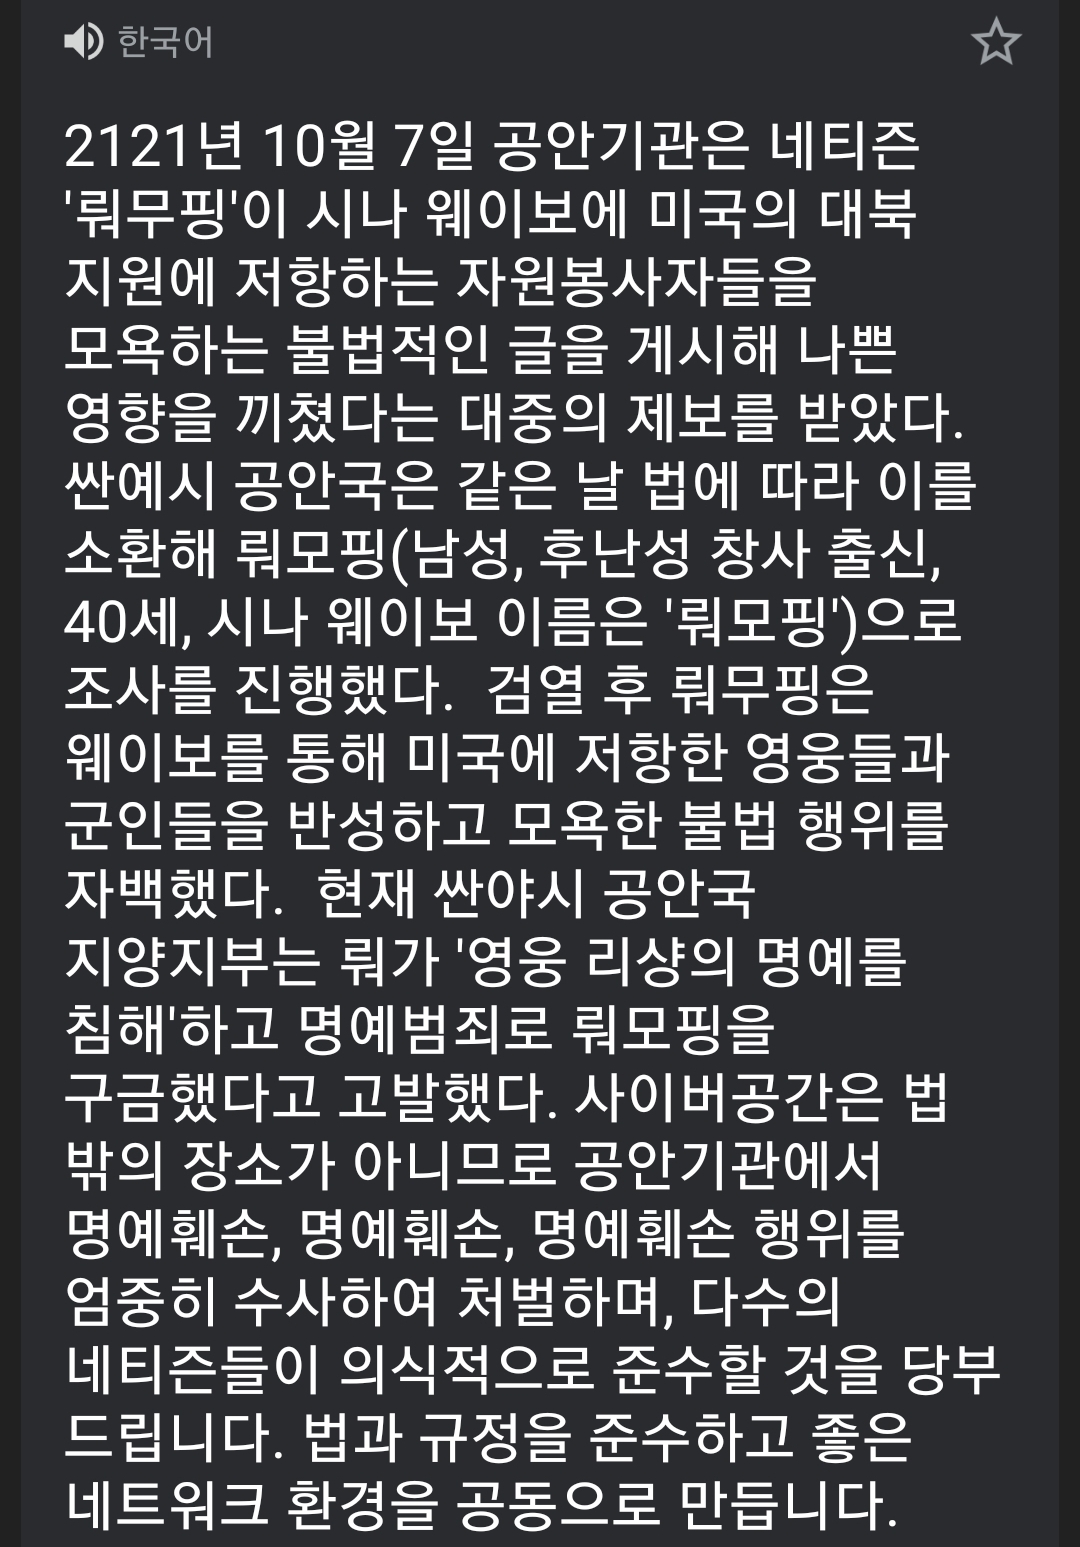 오싹오싹 장진호 영화 감상평 올린 기자.jpg